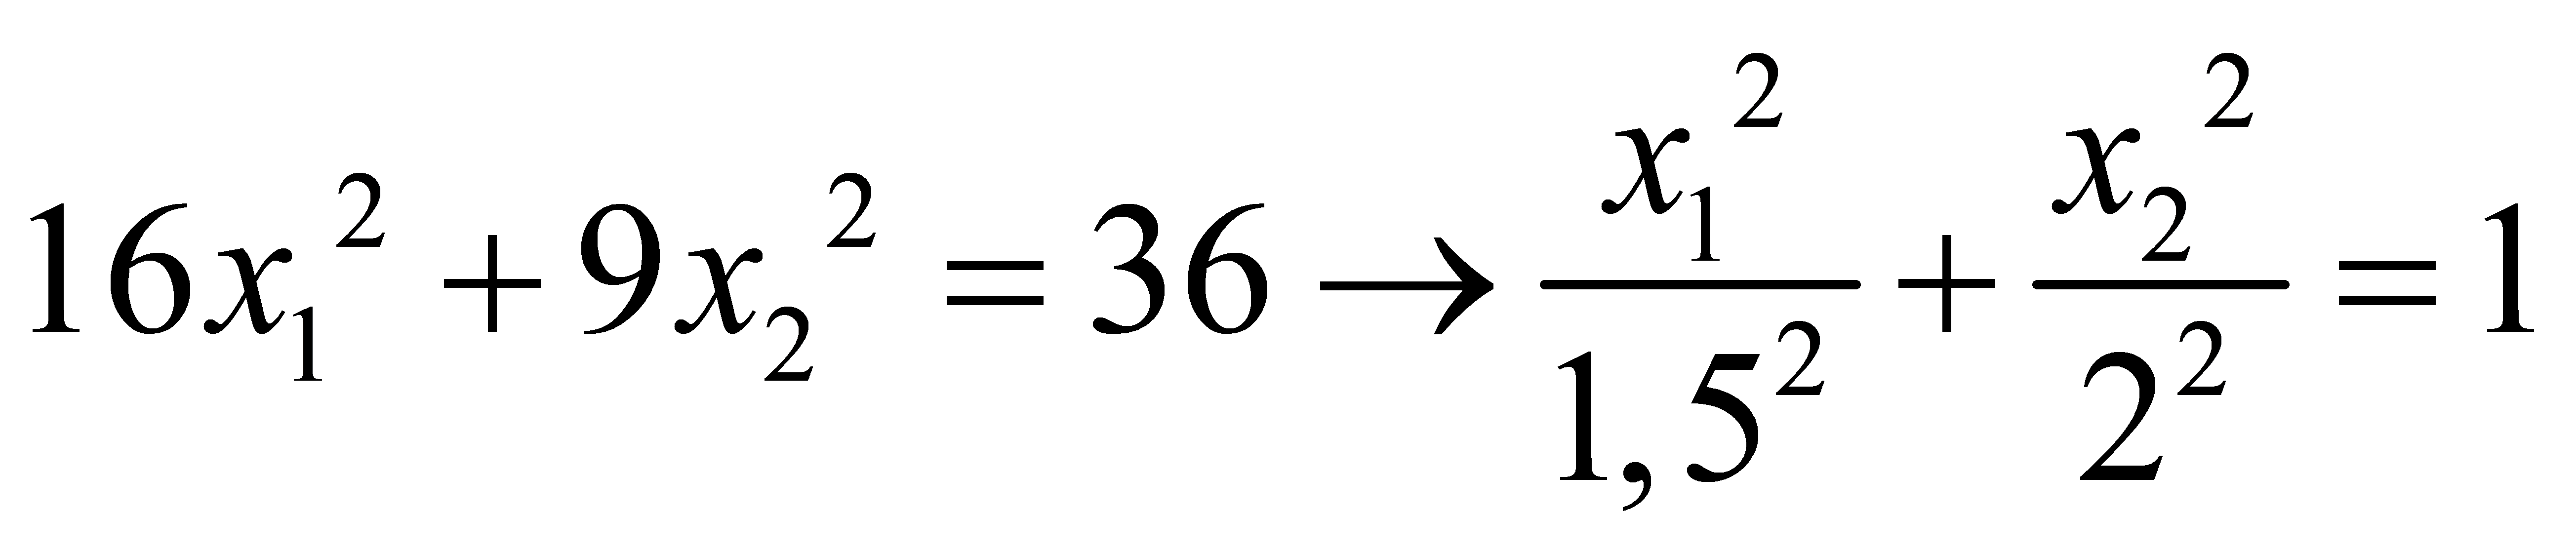 формула маклорена с остаточный член в форме лагранжа фото 97